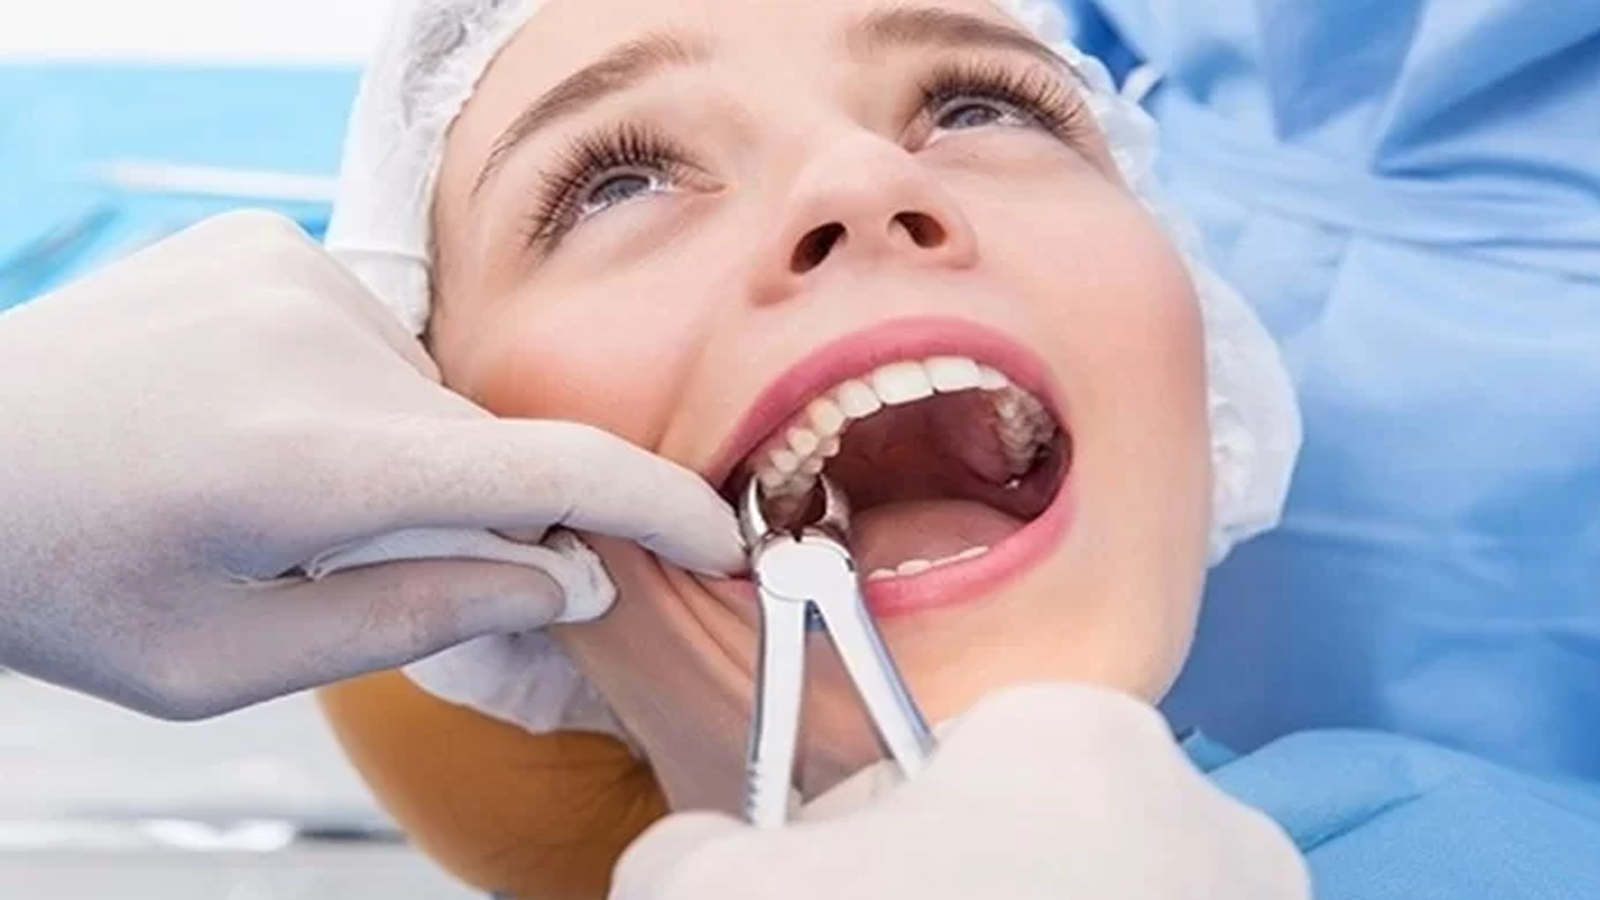 Có phản ứng dị ứng nào xảy ra sau khi tiêm thuốc tê nhổ răng không?